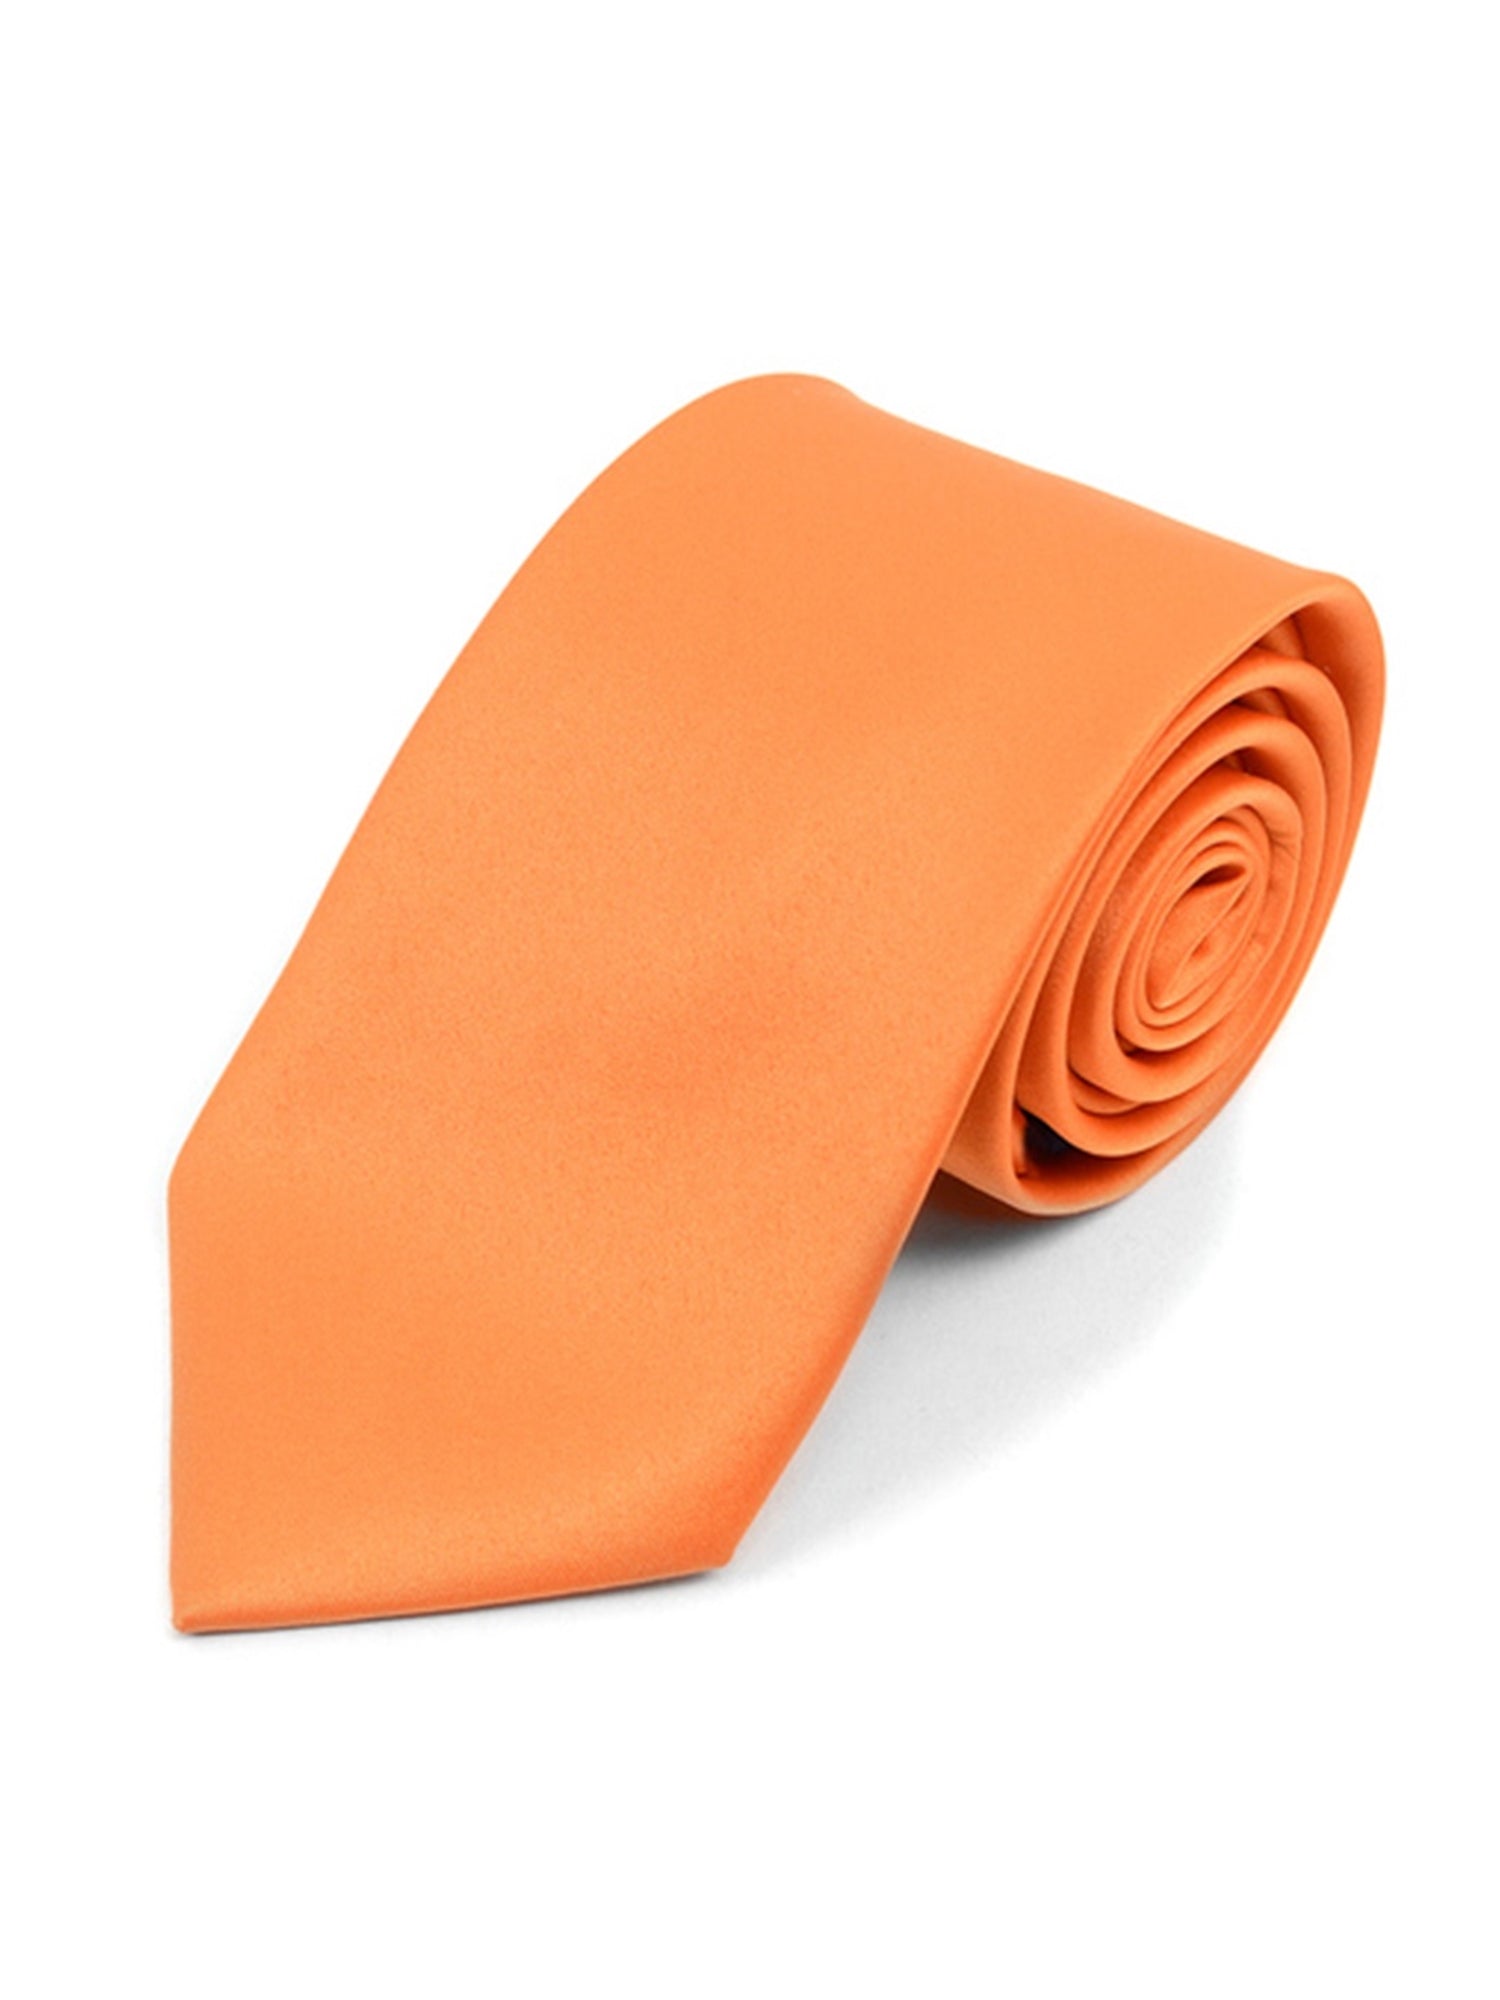 Boy's Age 12-18 Solid Color Poly Neck Tie Boy's Solid Color Neck Tie TheDapperTie Orange 49" 